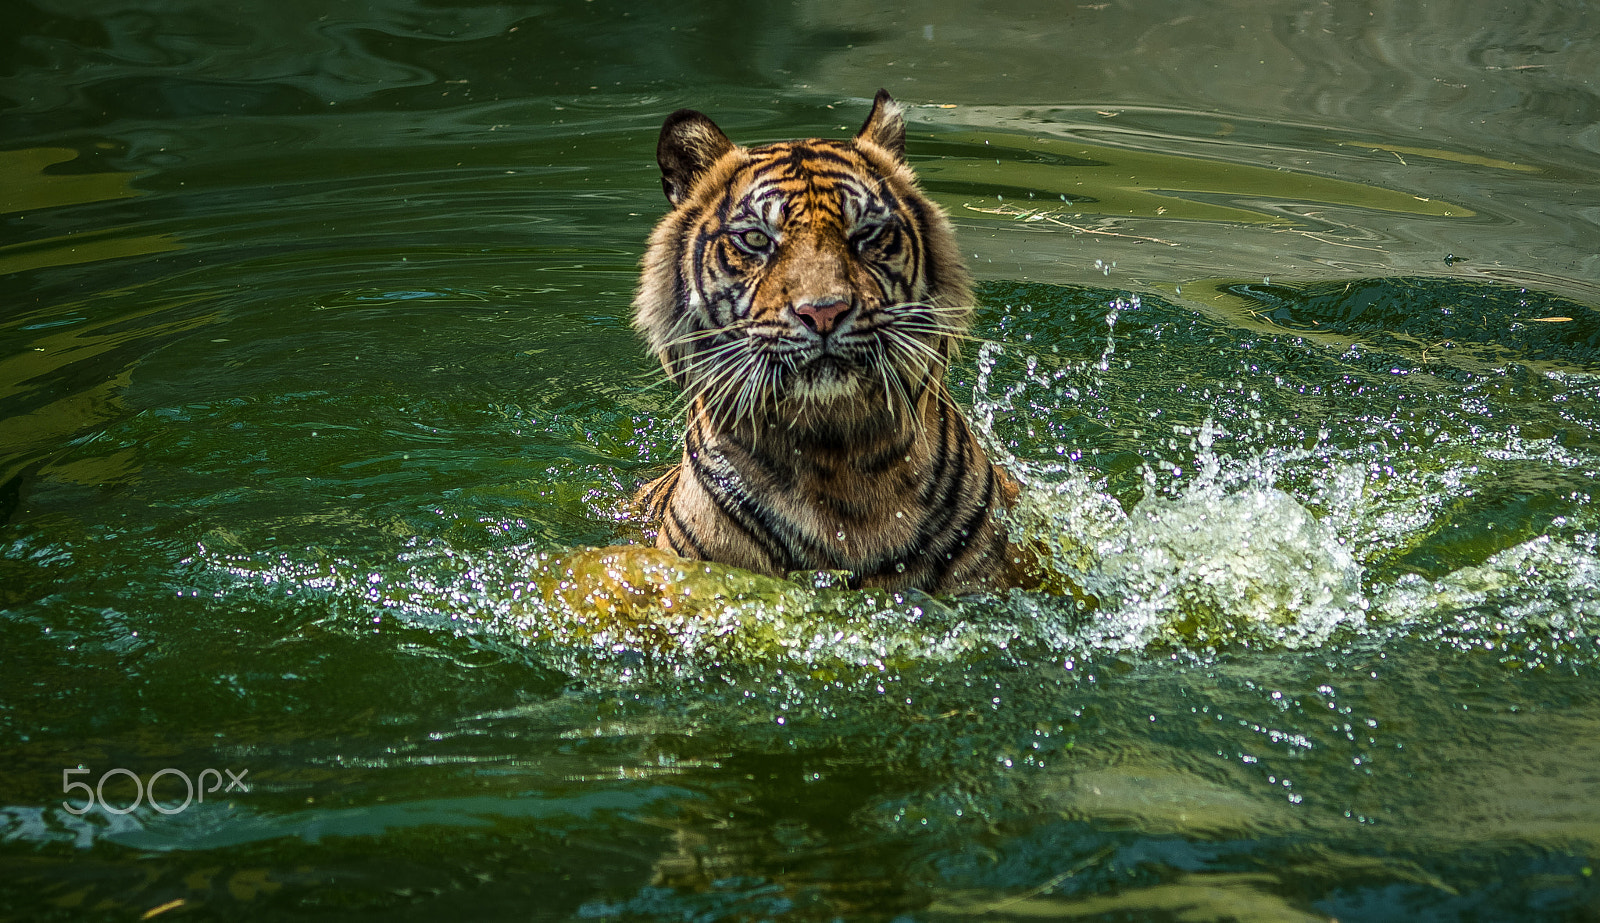 Nikon D5200 + Tamron SP AF 70-200mm F2.8 Di LD (IF) MACRO sample photo. Swiming tigers photography